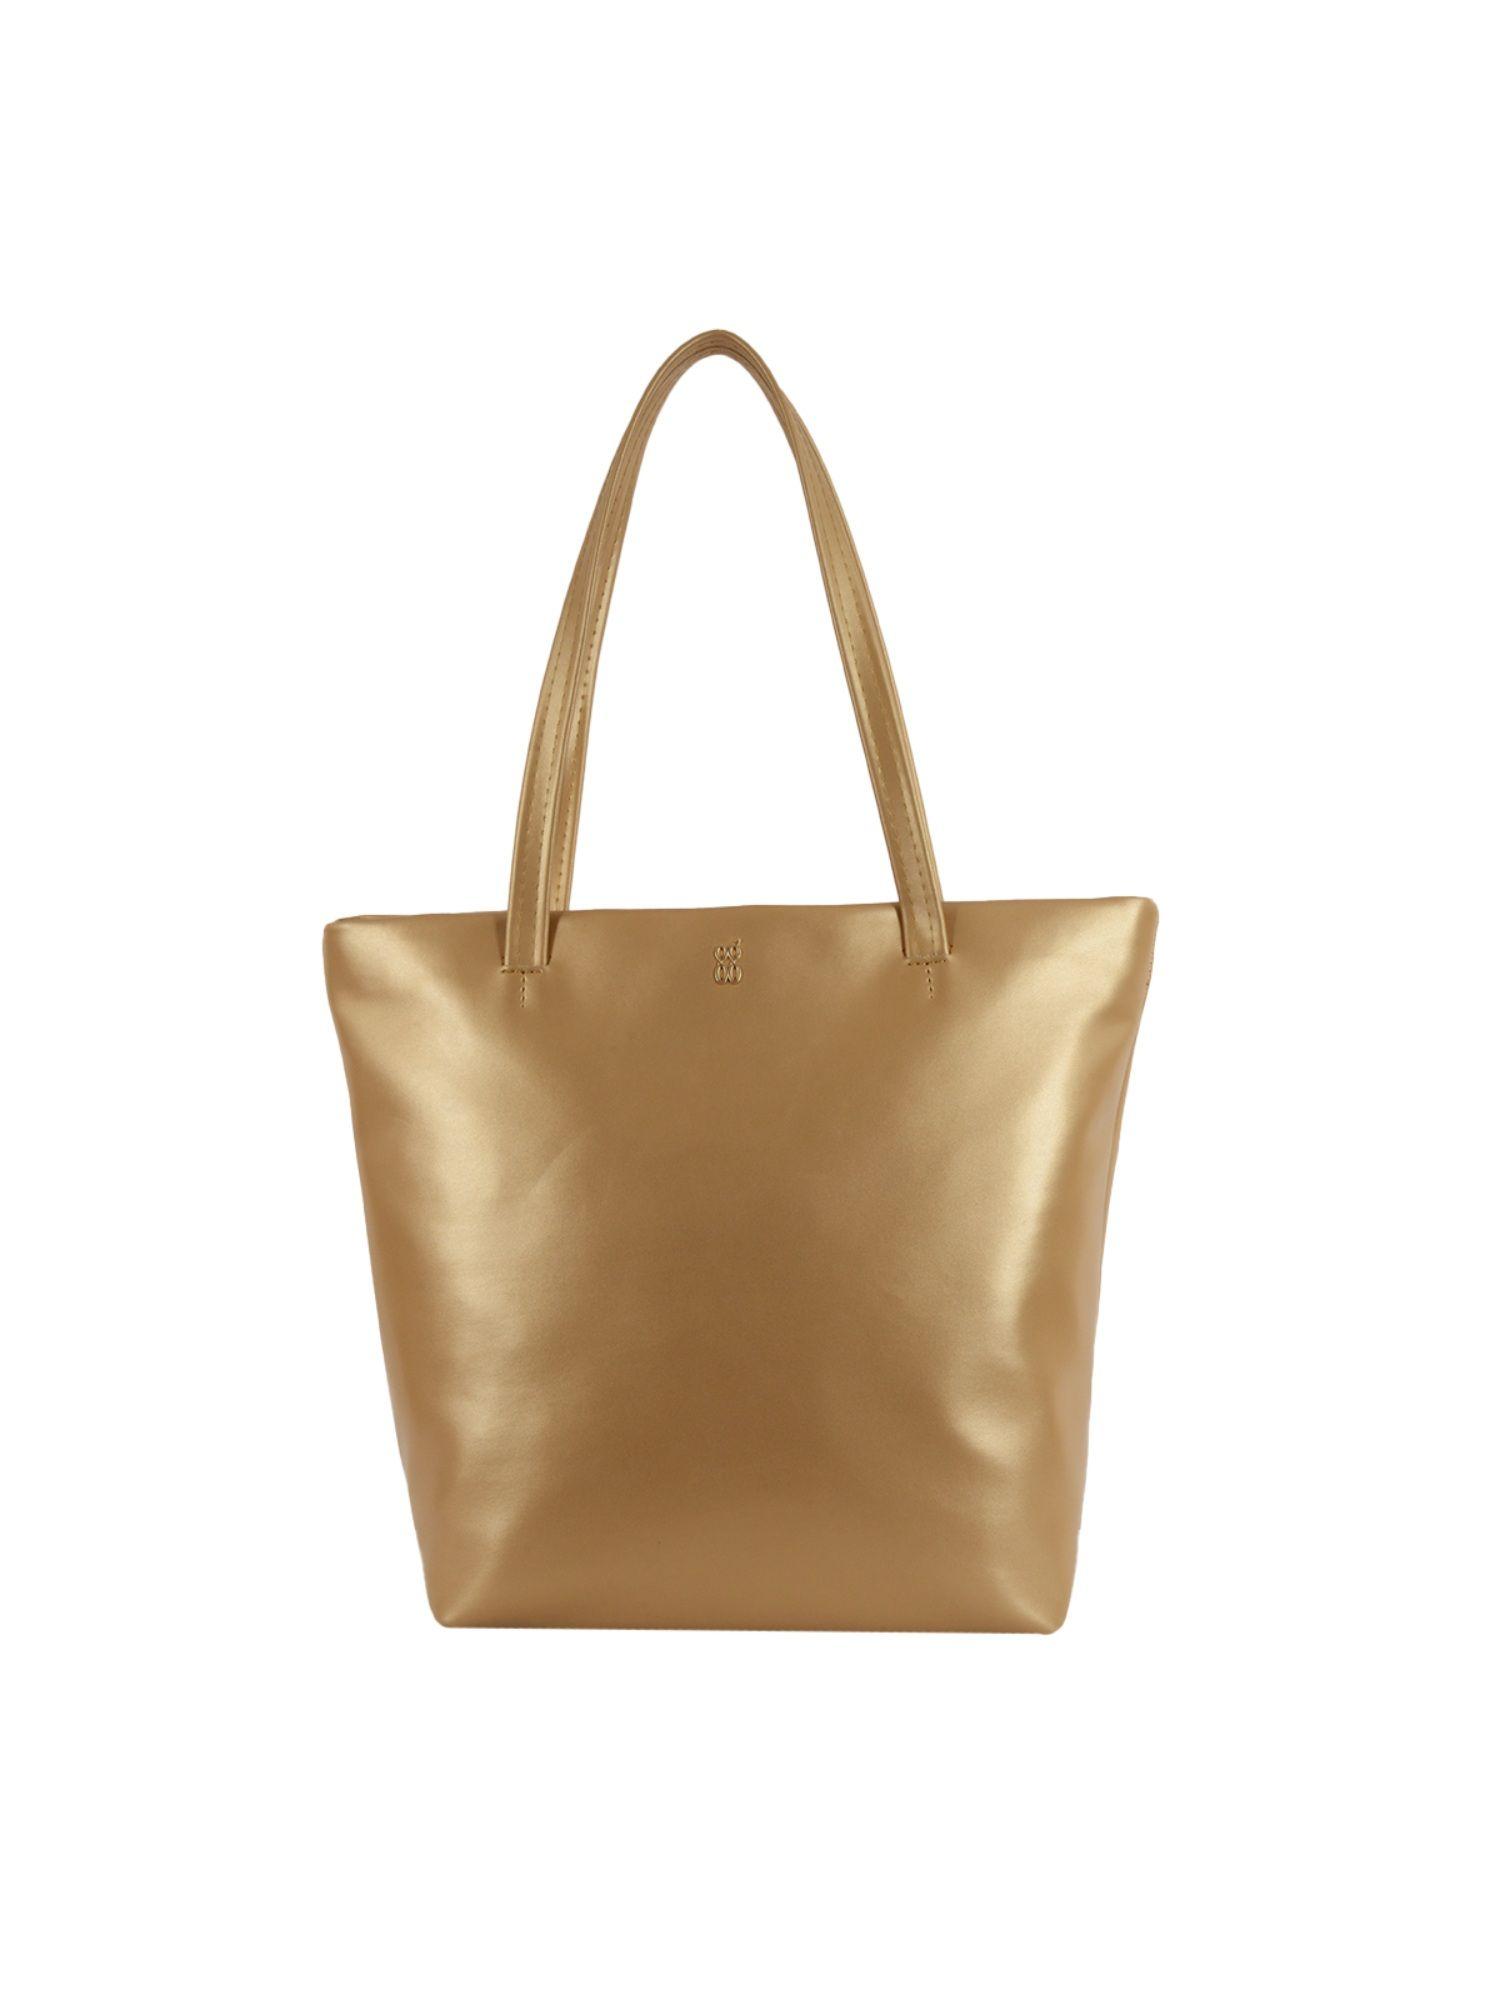 egyt gold tote handbag (l)